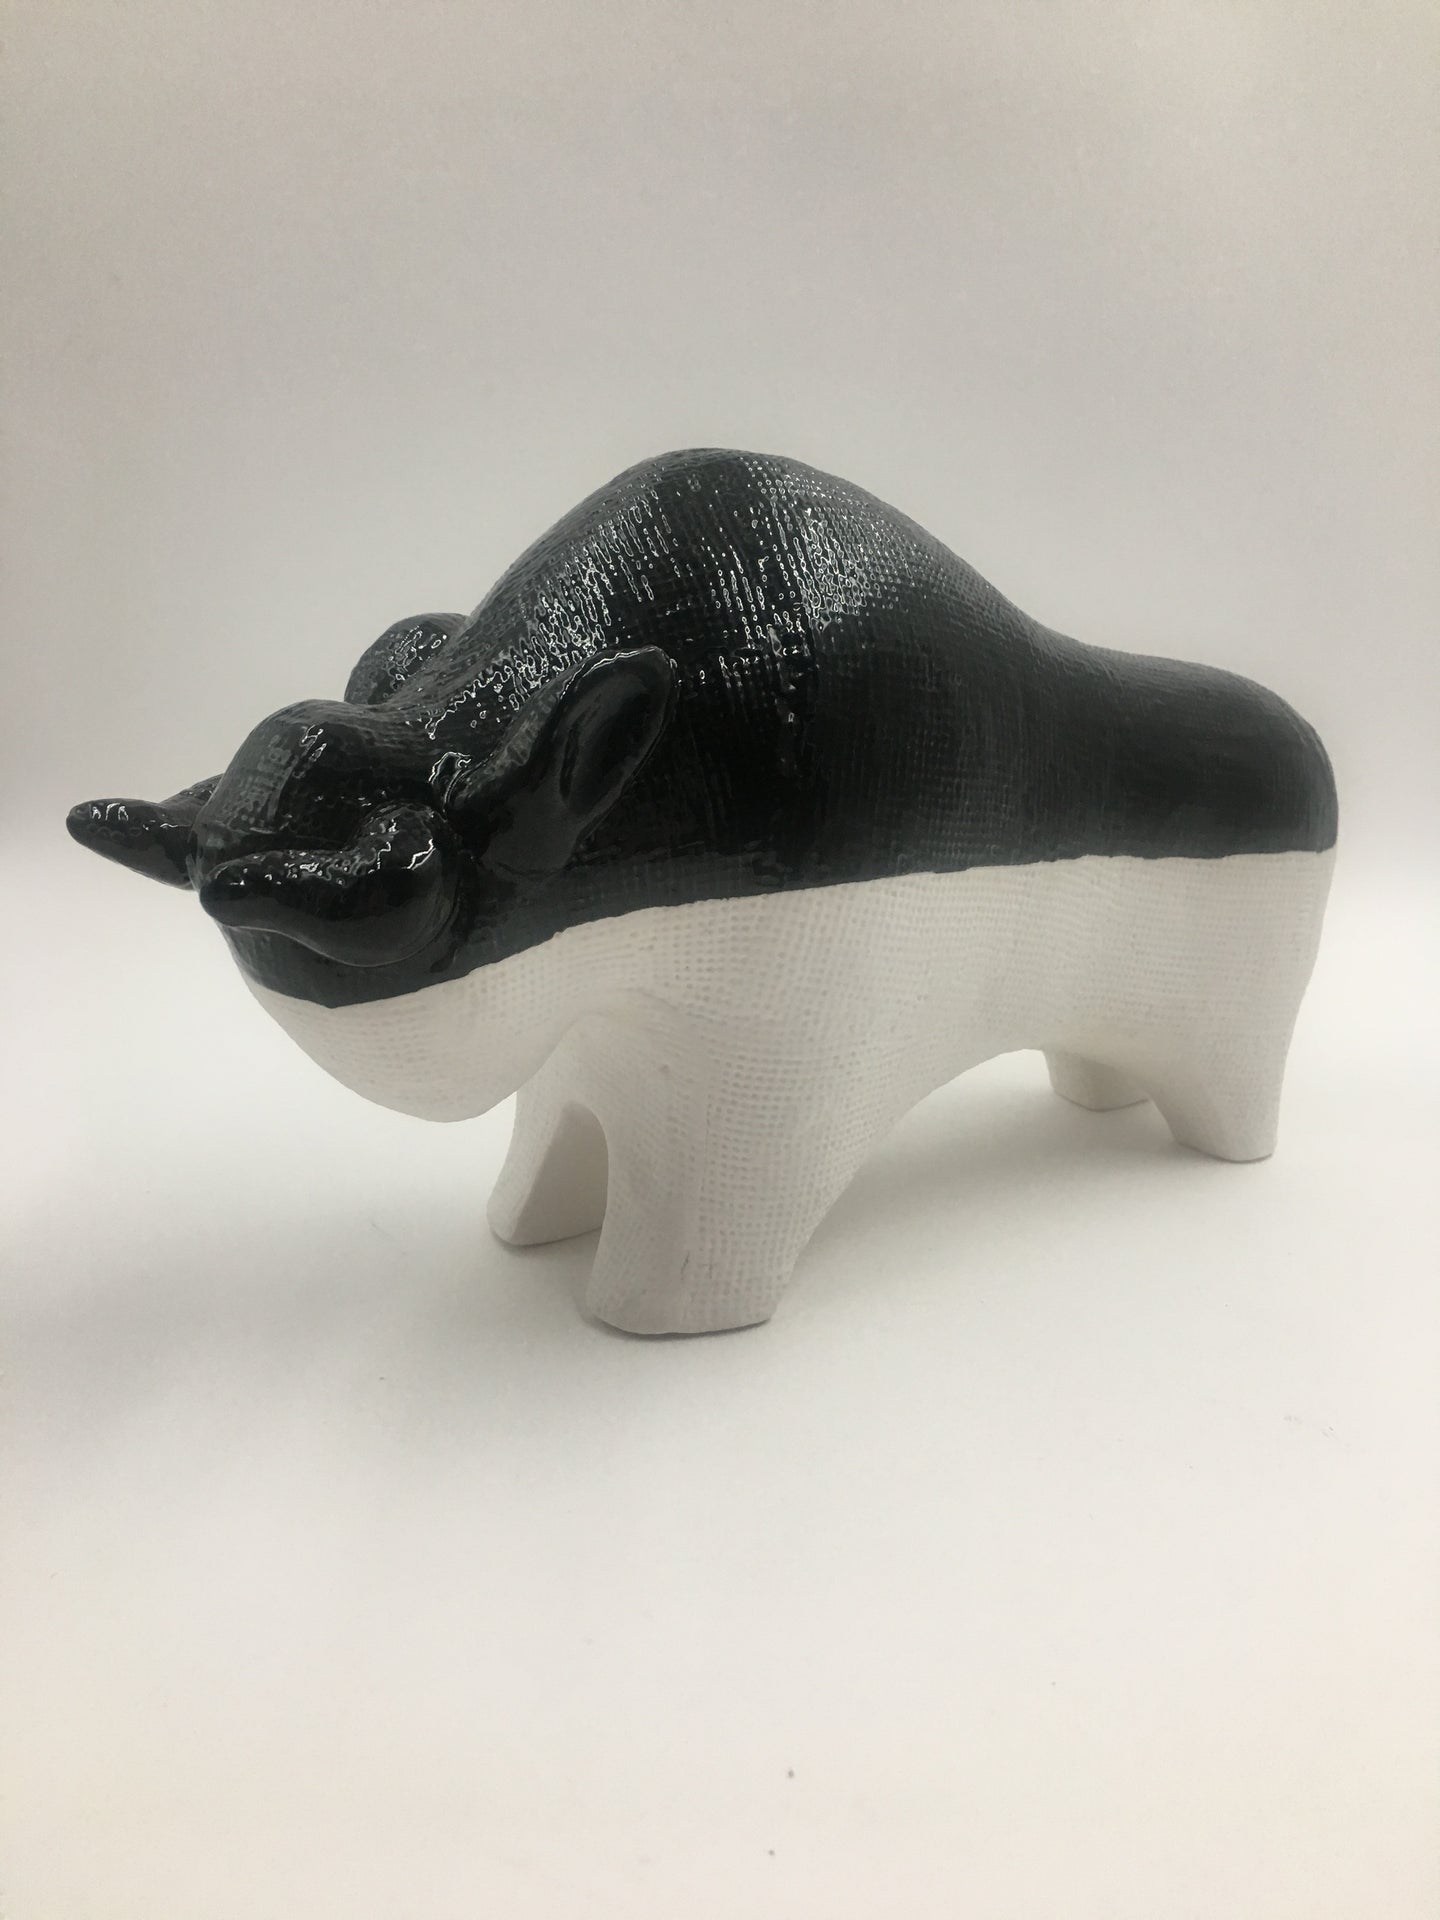 Modern Ceramic Black and White Bull